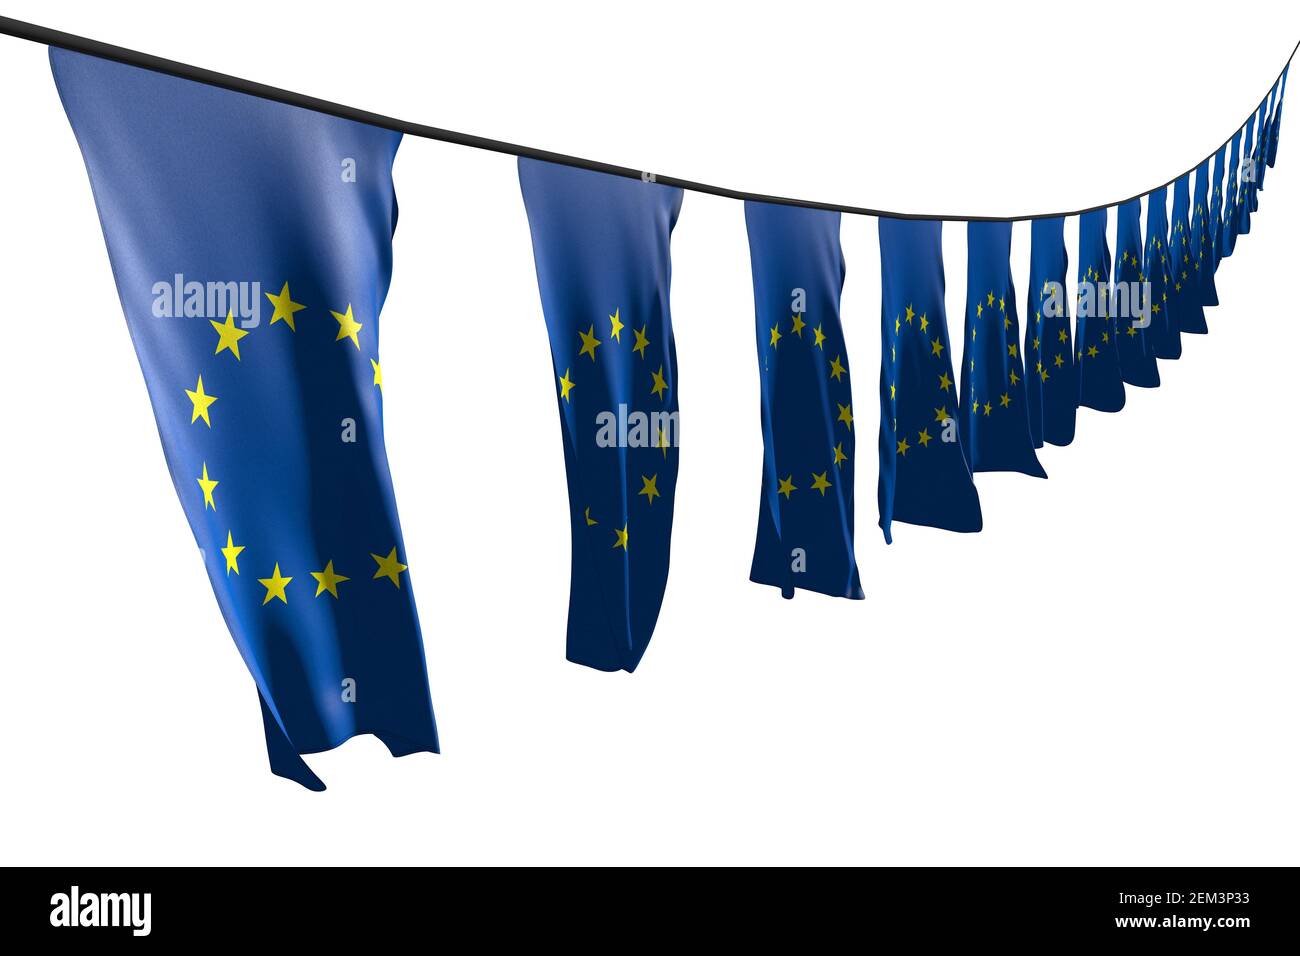 Ziemlich Tag der Arbeit Flagge 3D Illustration - viele Europäische Union Flaggen oder Banner, die diagonal hängen, mit perspektivischer Ansicht am Seil Isoliert auf Weiß Stockfoto